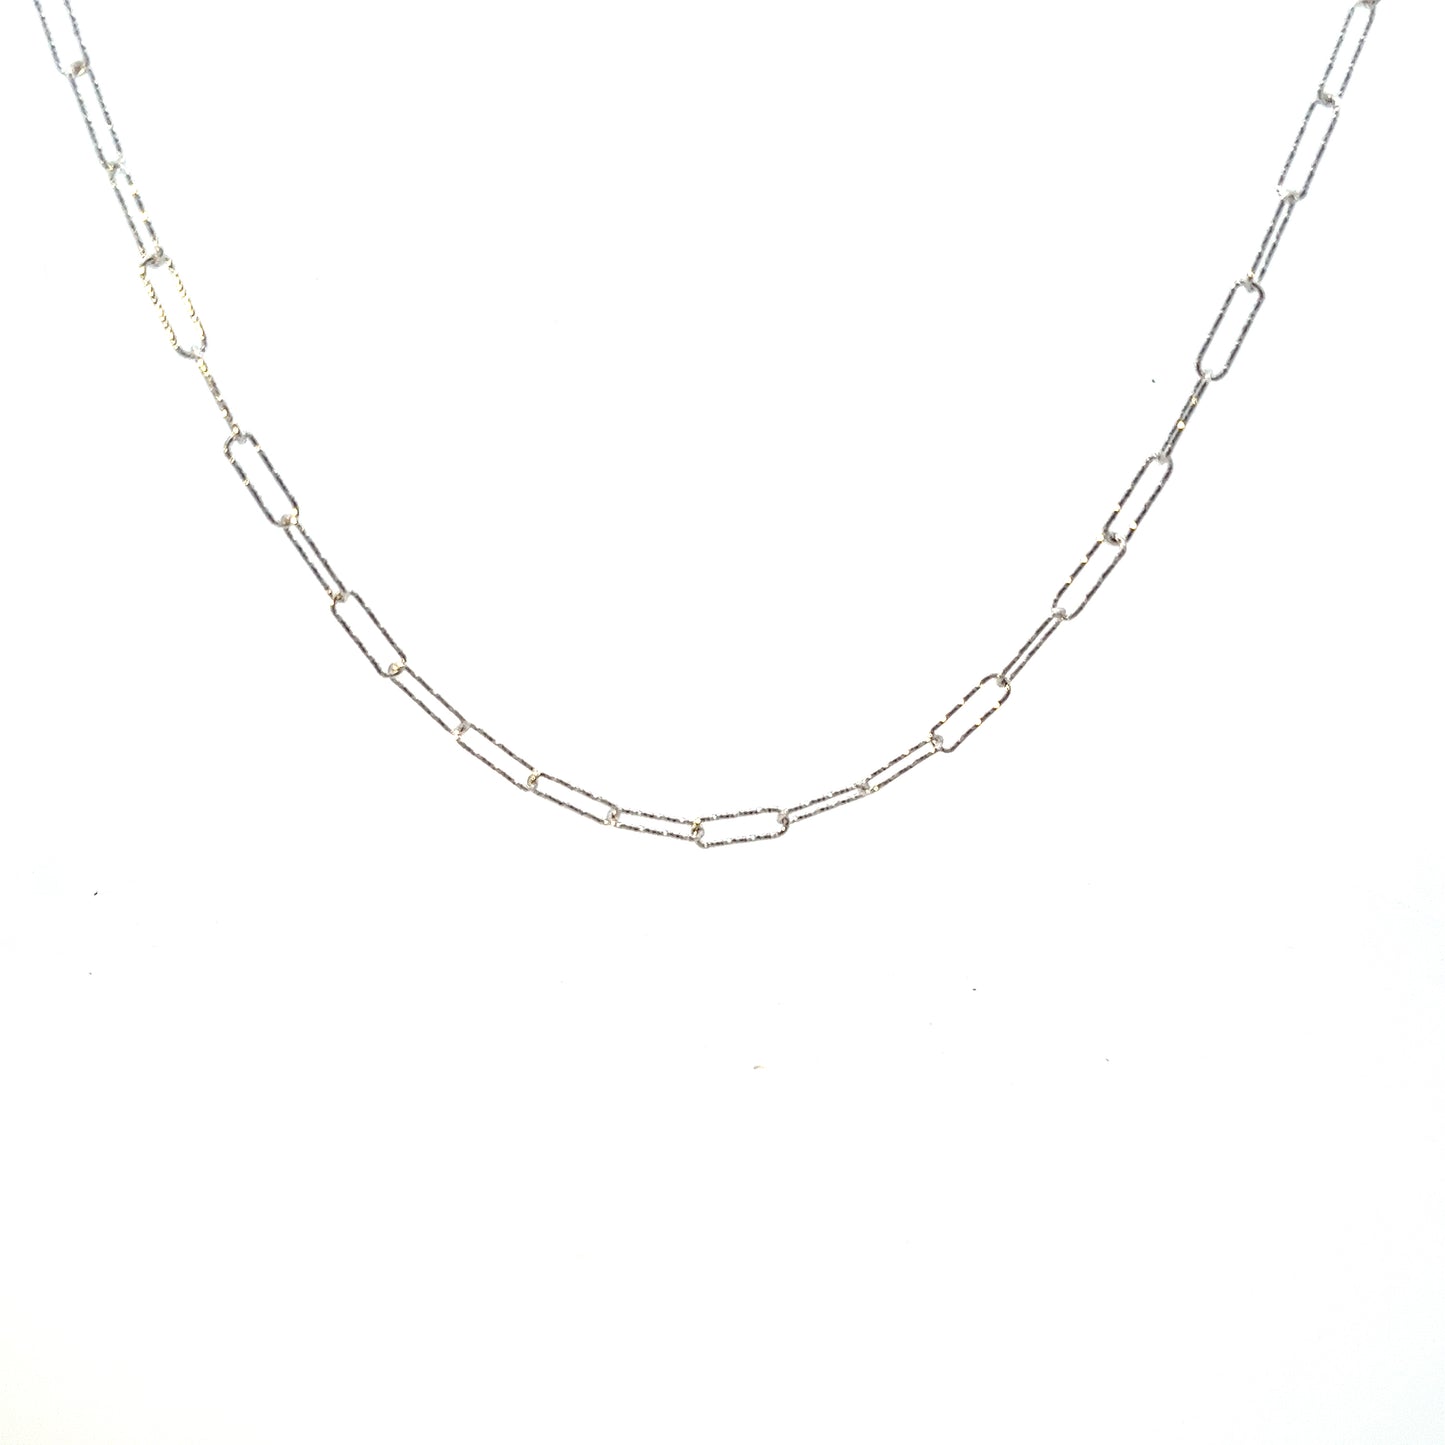 Rada Link Necklace in silver